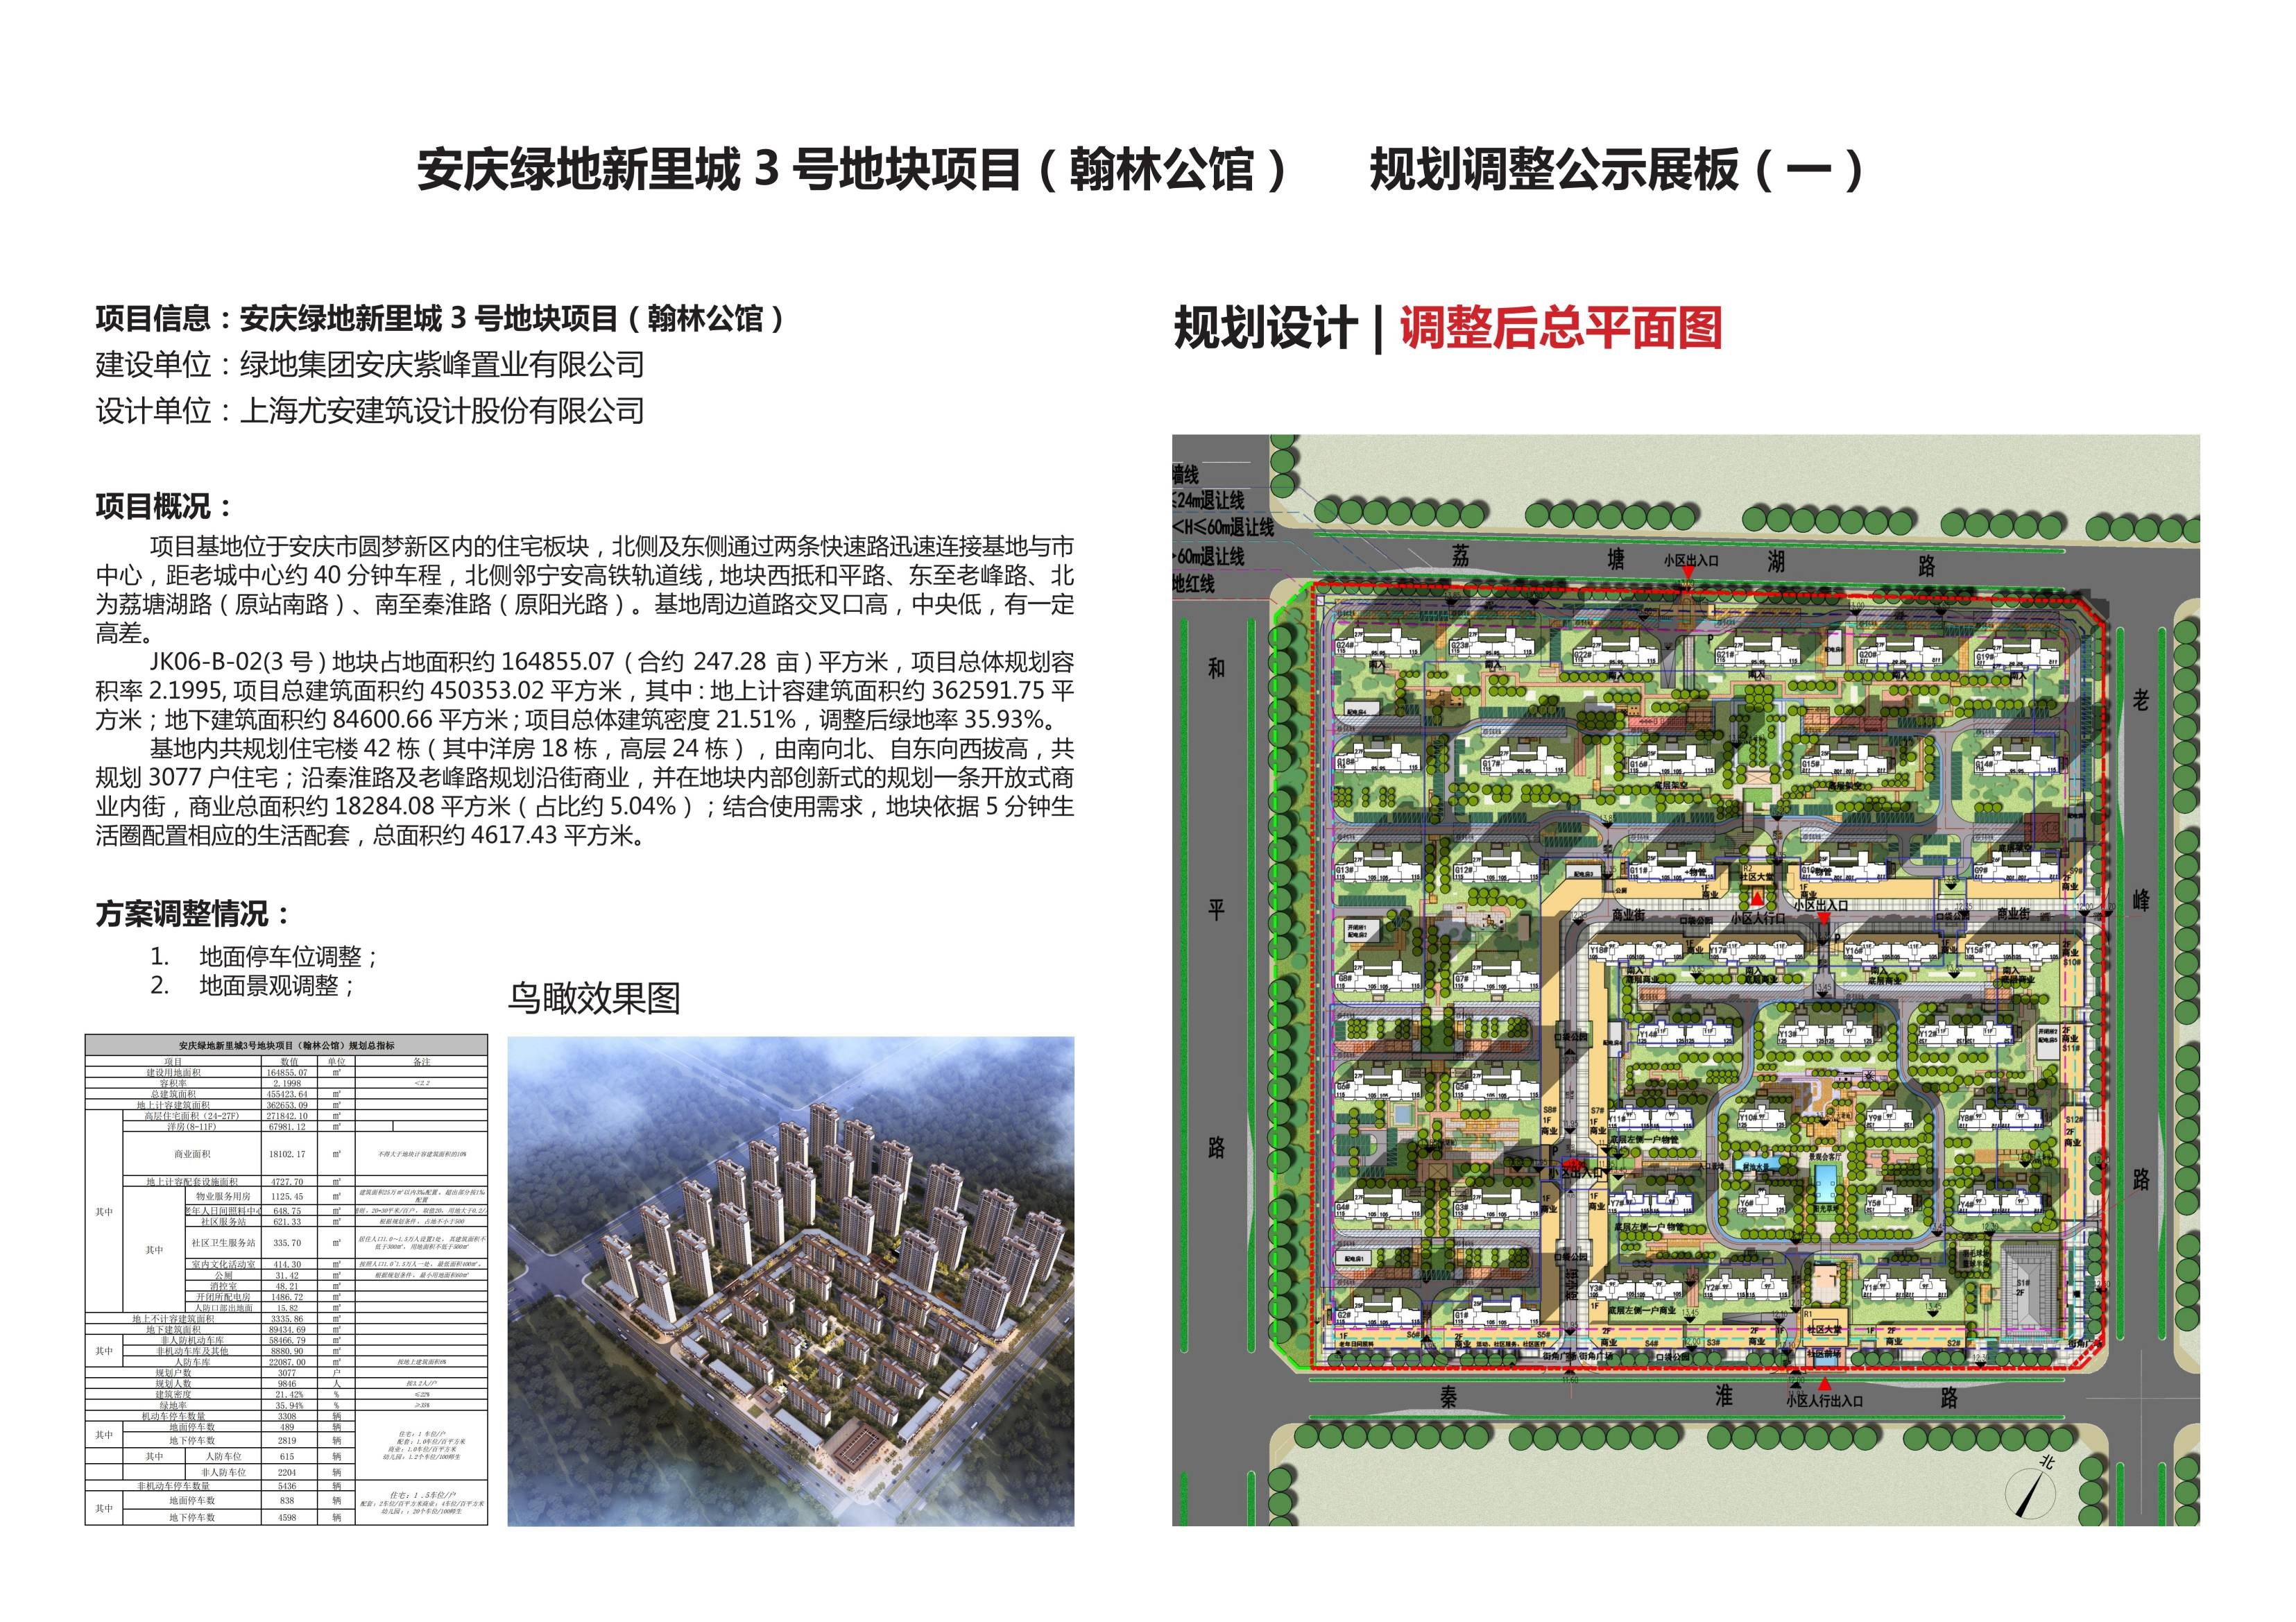 安庆绿地新里城3号地块项目（翰林公馆） 规划调整公示通告